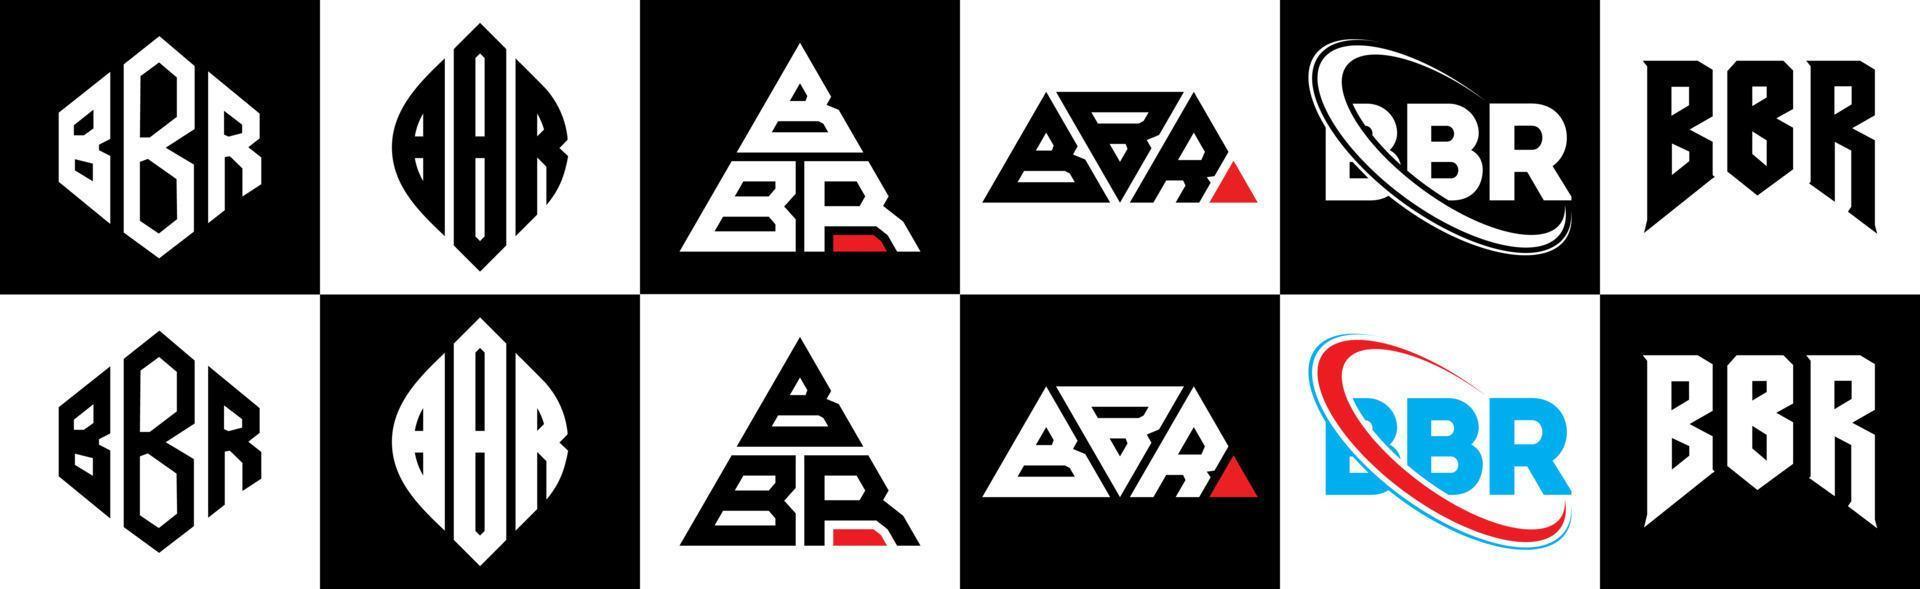 création de logo de lettre bbr en six styles. polygone bbr, cercle, triangle, hexagone, style plat et simple avec logo de lettre de variation de couleur noir et blanc dans un plan de travail. logo bbr minimaliste et classique vecteur